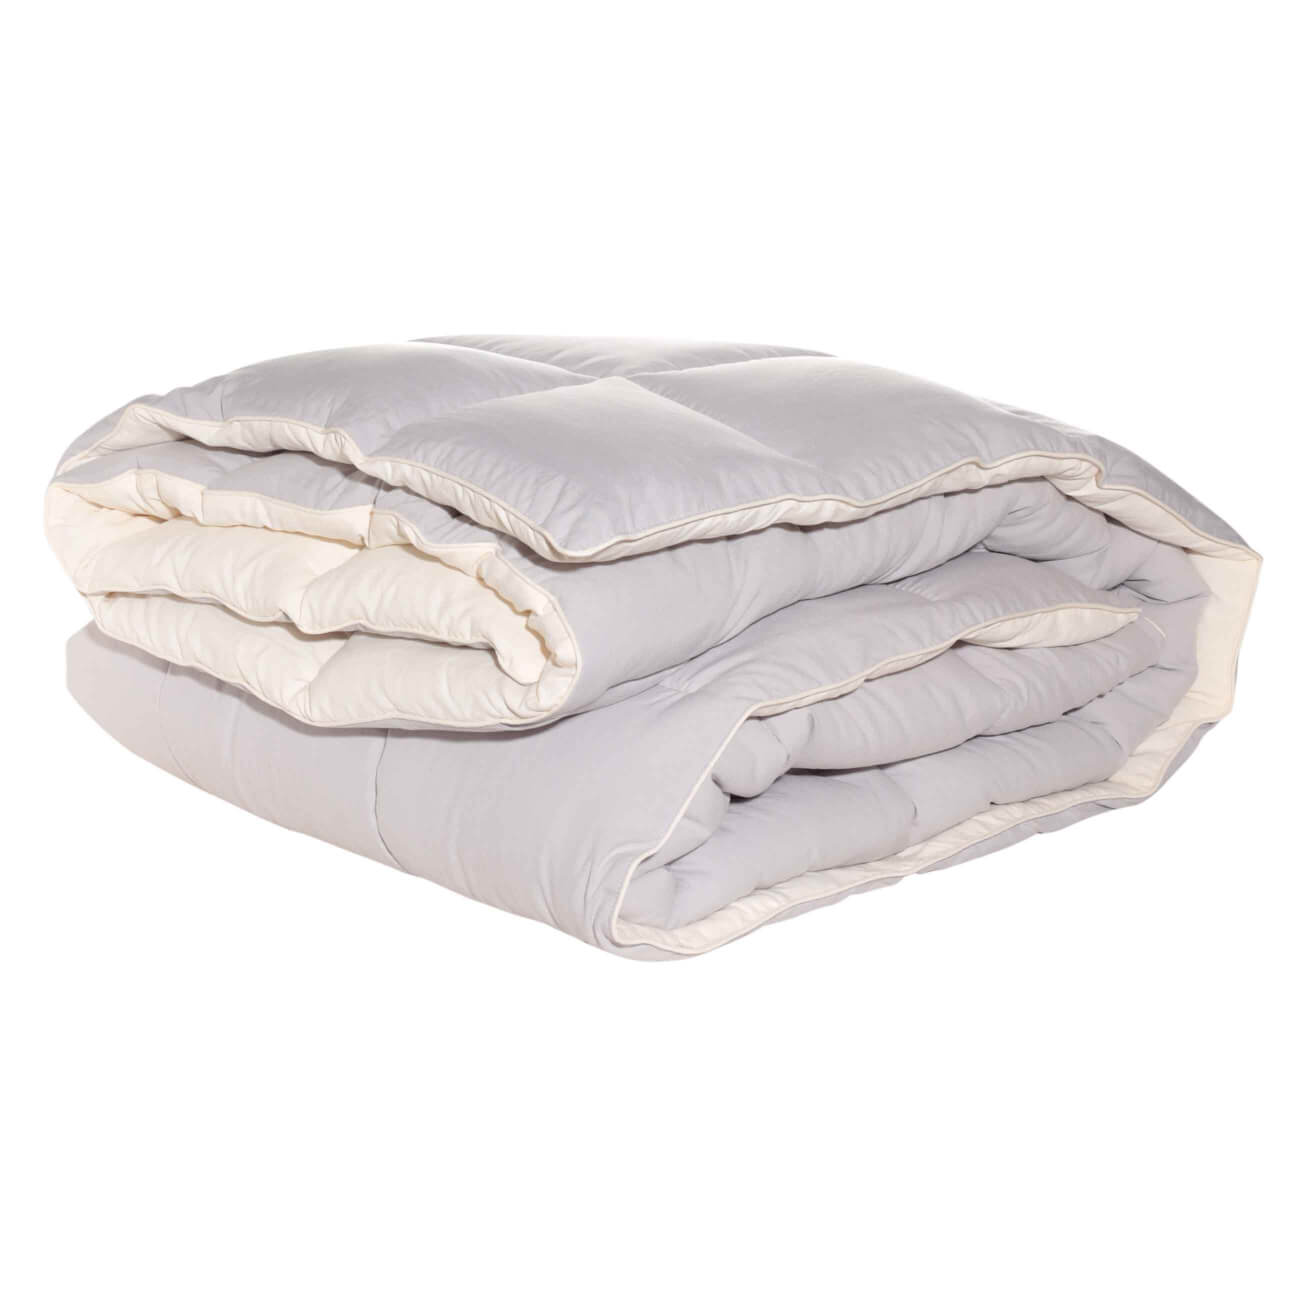 Одеяло, 200х220 см, микрофибра/холлофайбер, бежевое/молочное, Hollow fiber одеяло 200х220 см микрофибра холлофайбер бежевое молочное hollow fiber